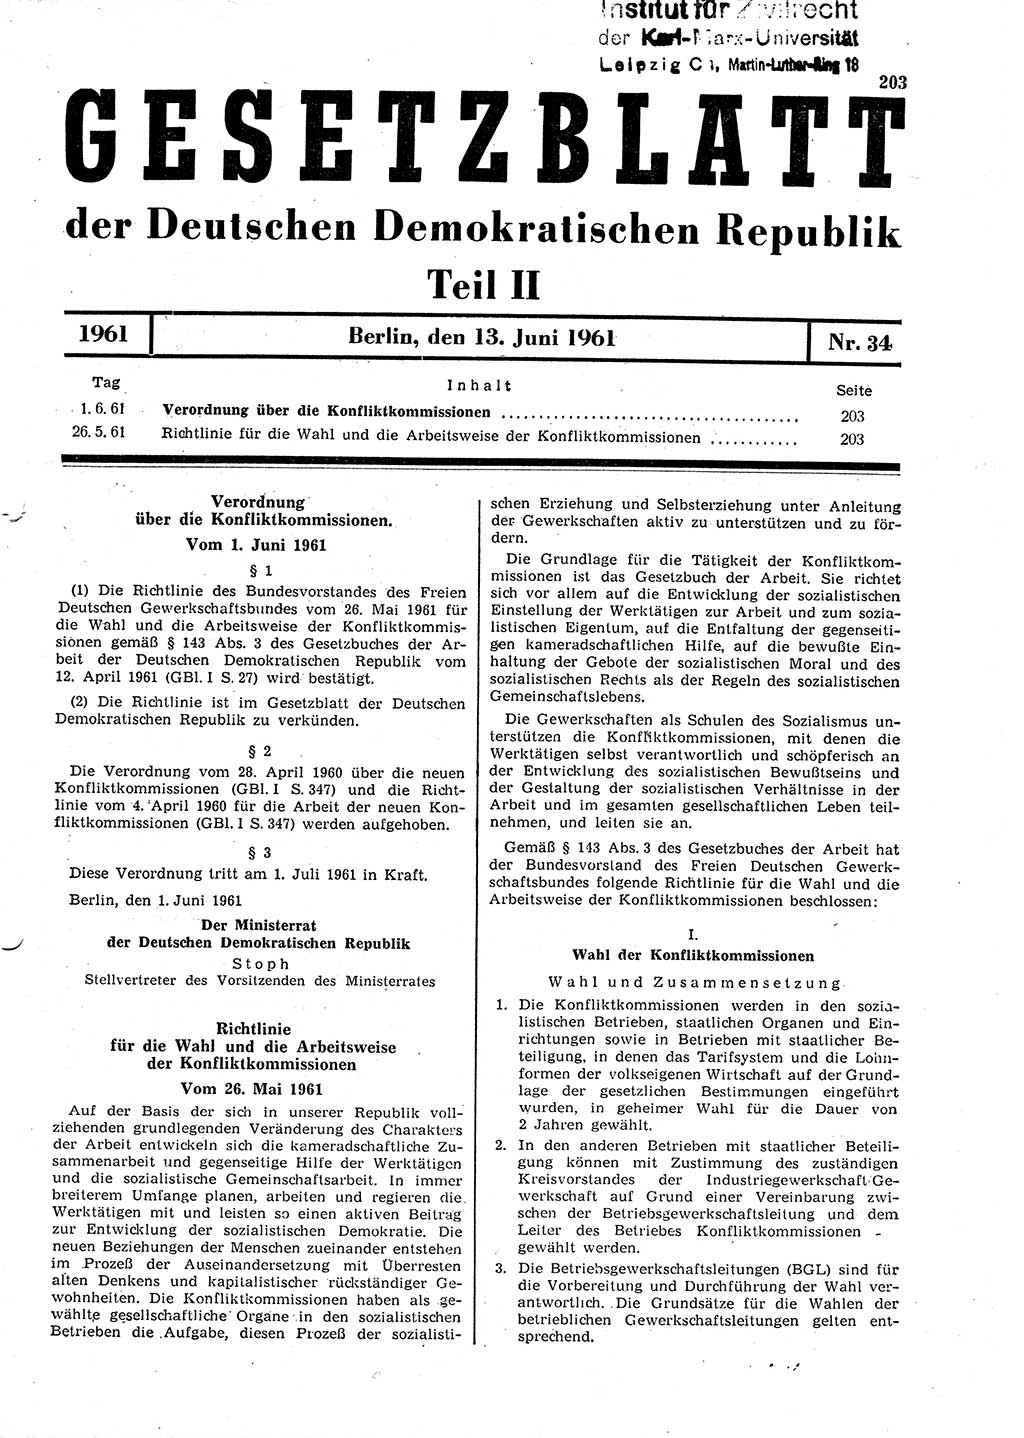 Gesetzblatt (GBl.) der Deutschen Demokratischen Republik (DDR) Teil ⅠⅠ 1961, Seite 203 (GBl. DDR ⅠⅠ 1961, S. 203)